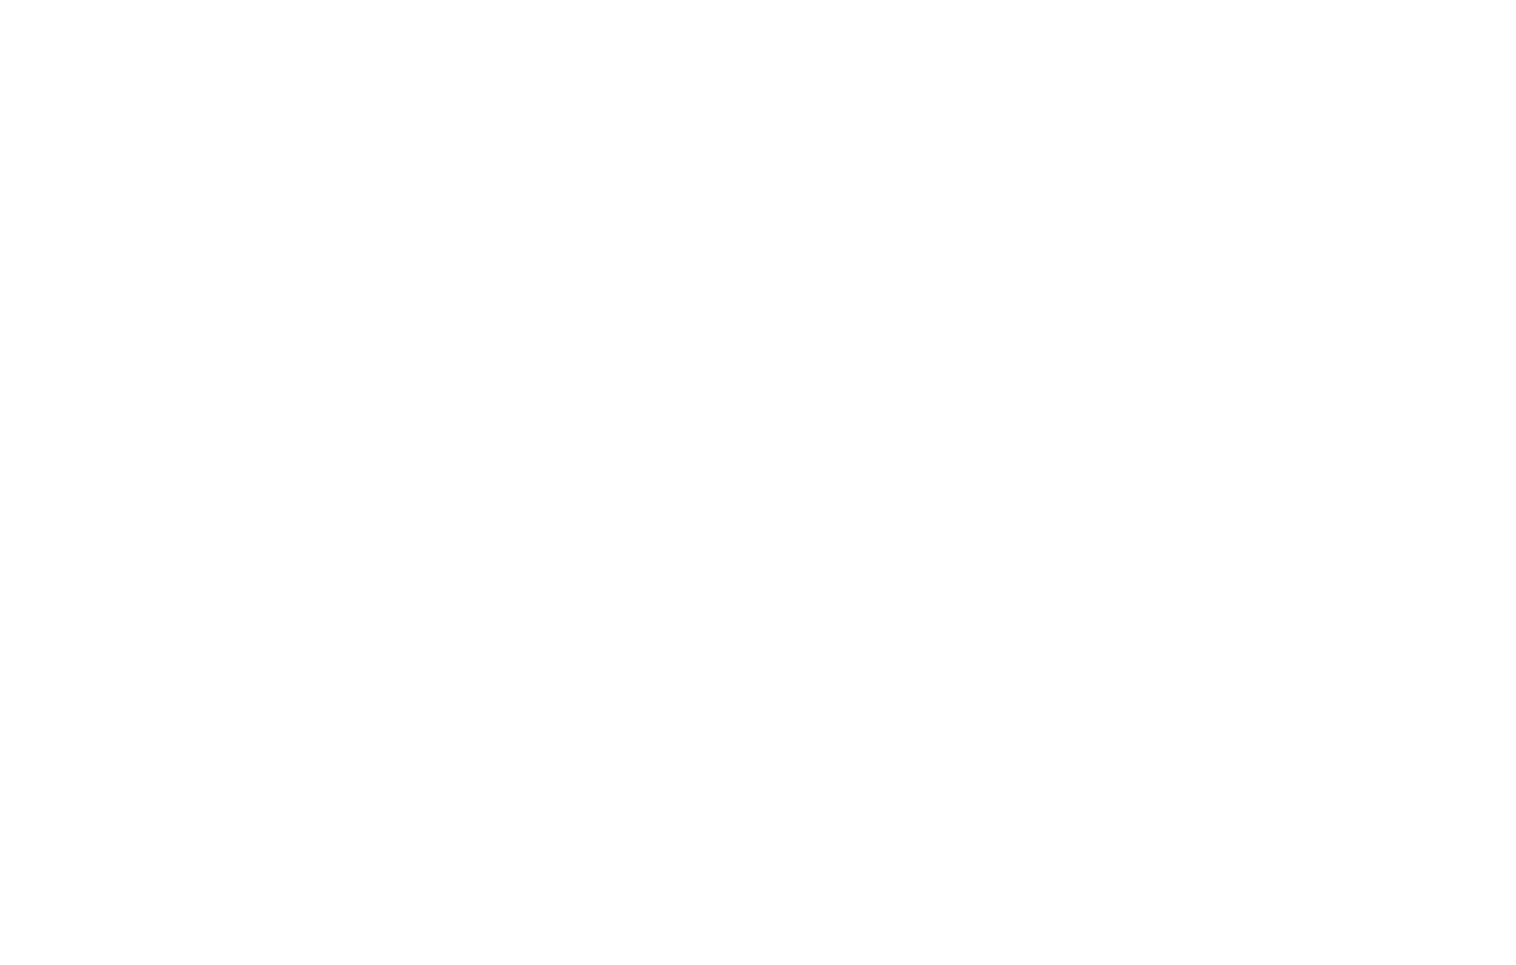 Berkshire Grey logo for dark backgrounds (transparent PNG)